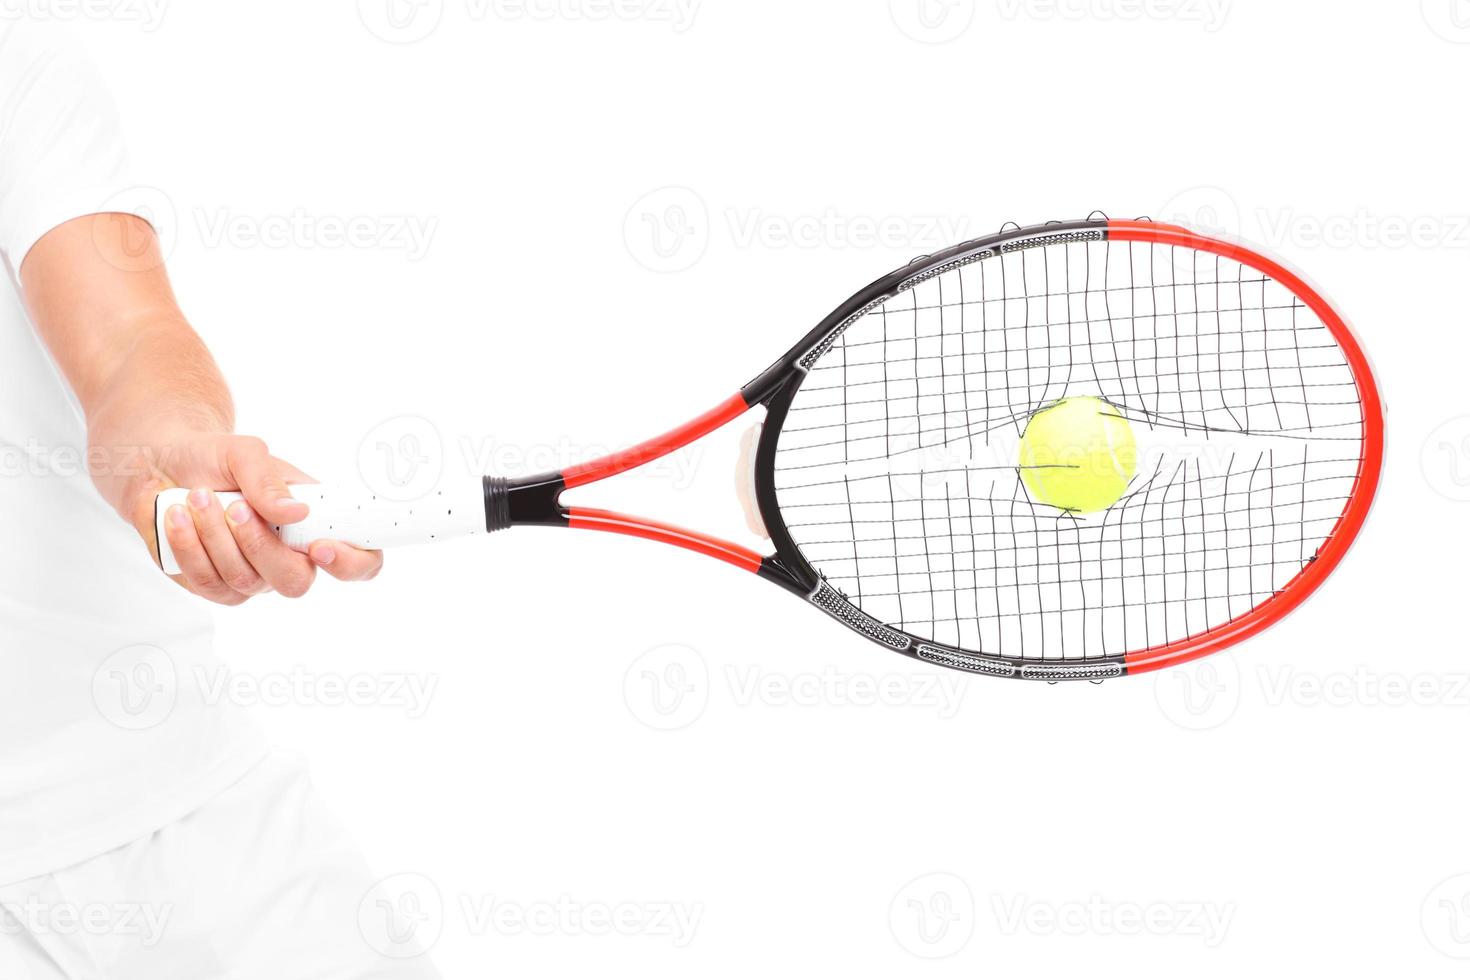 Broken strings in tennis racket photo